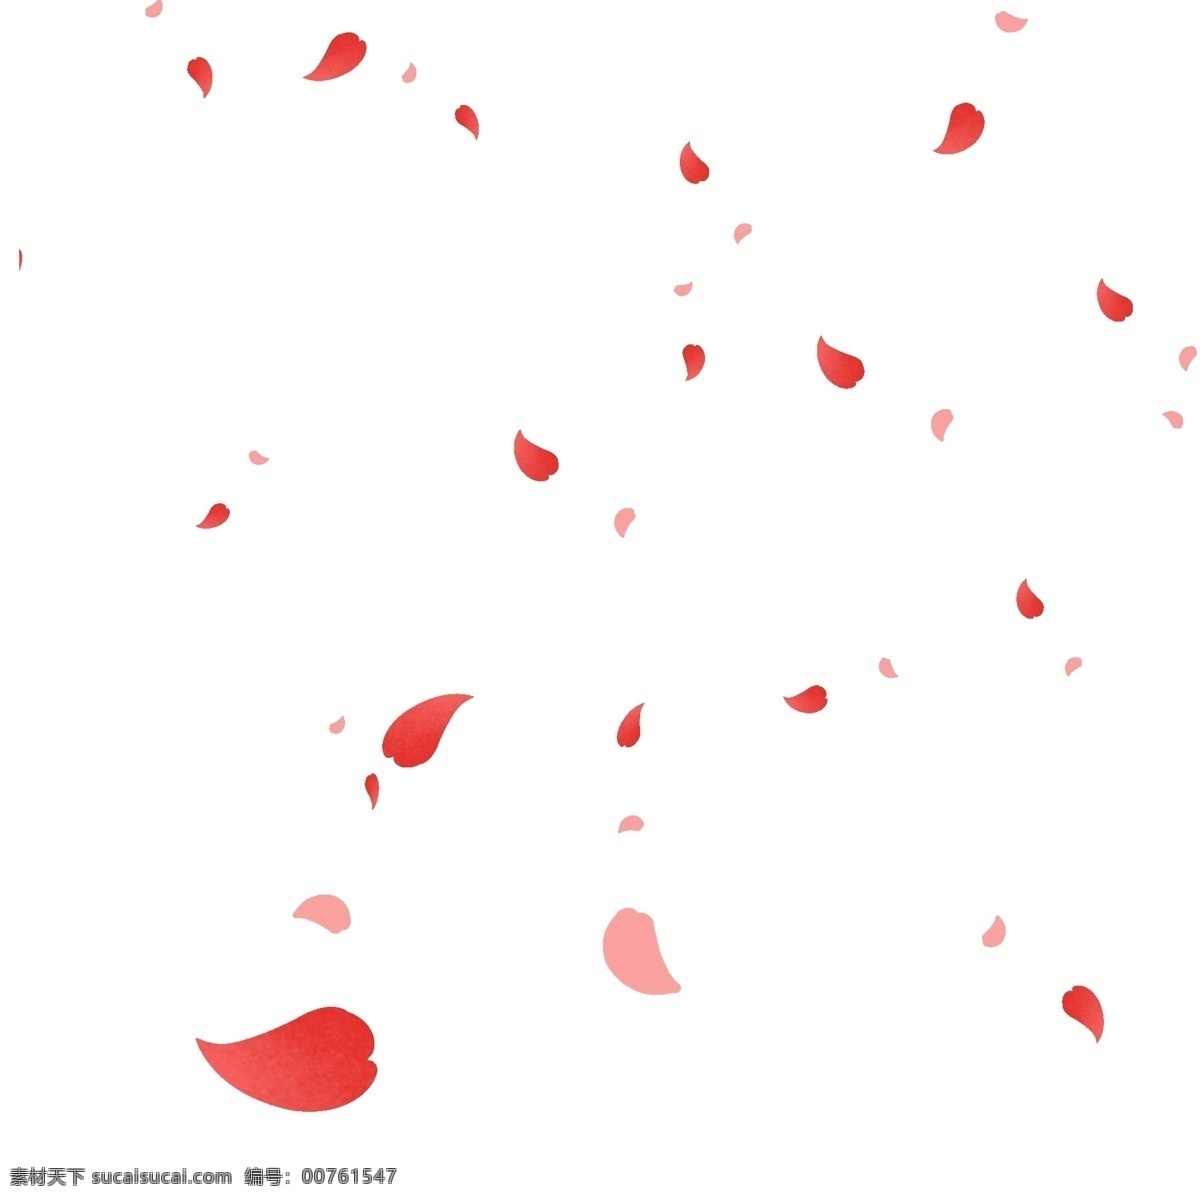 玫瑰 花瓣 装饰 插画 玫瑰花瓣 红色的花瓣 漂亮的花瓣 花瓣装饰 花瓣插画 立体花瓣 卡通花瓣 飘落的花瓣